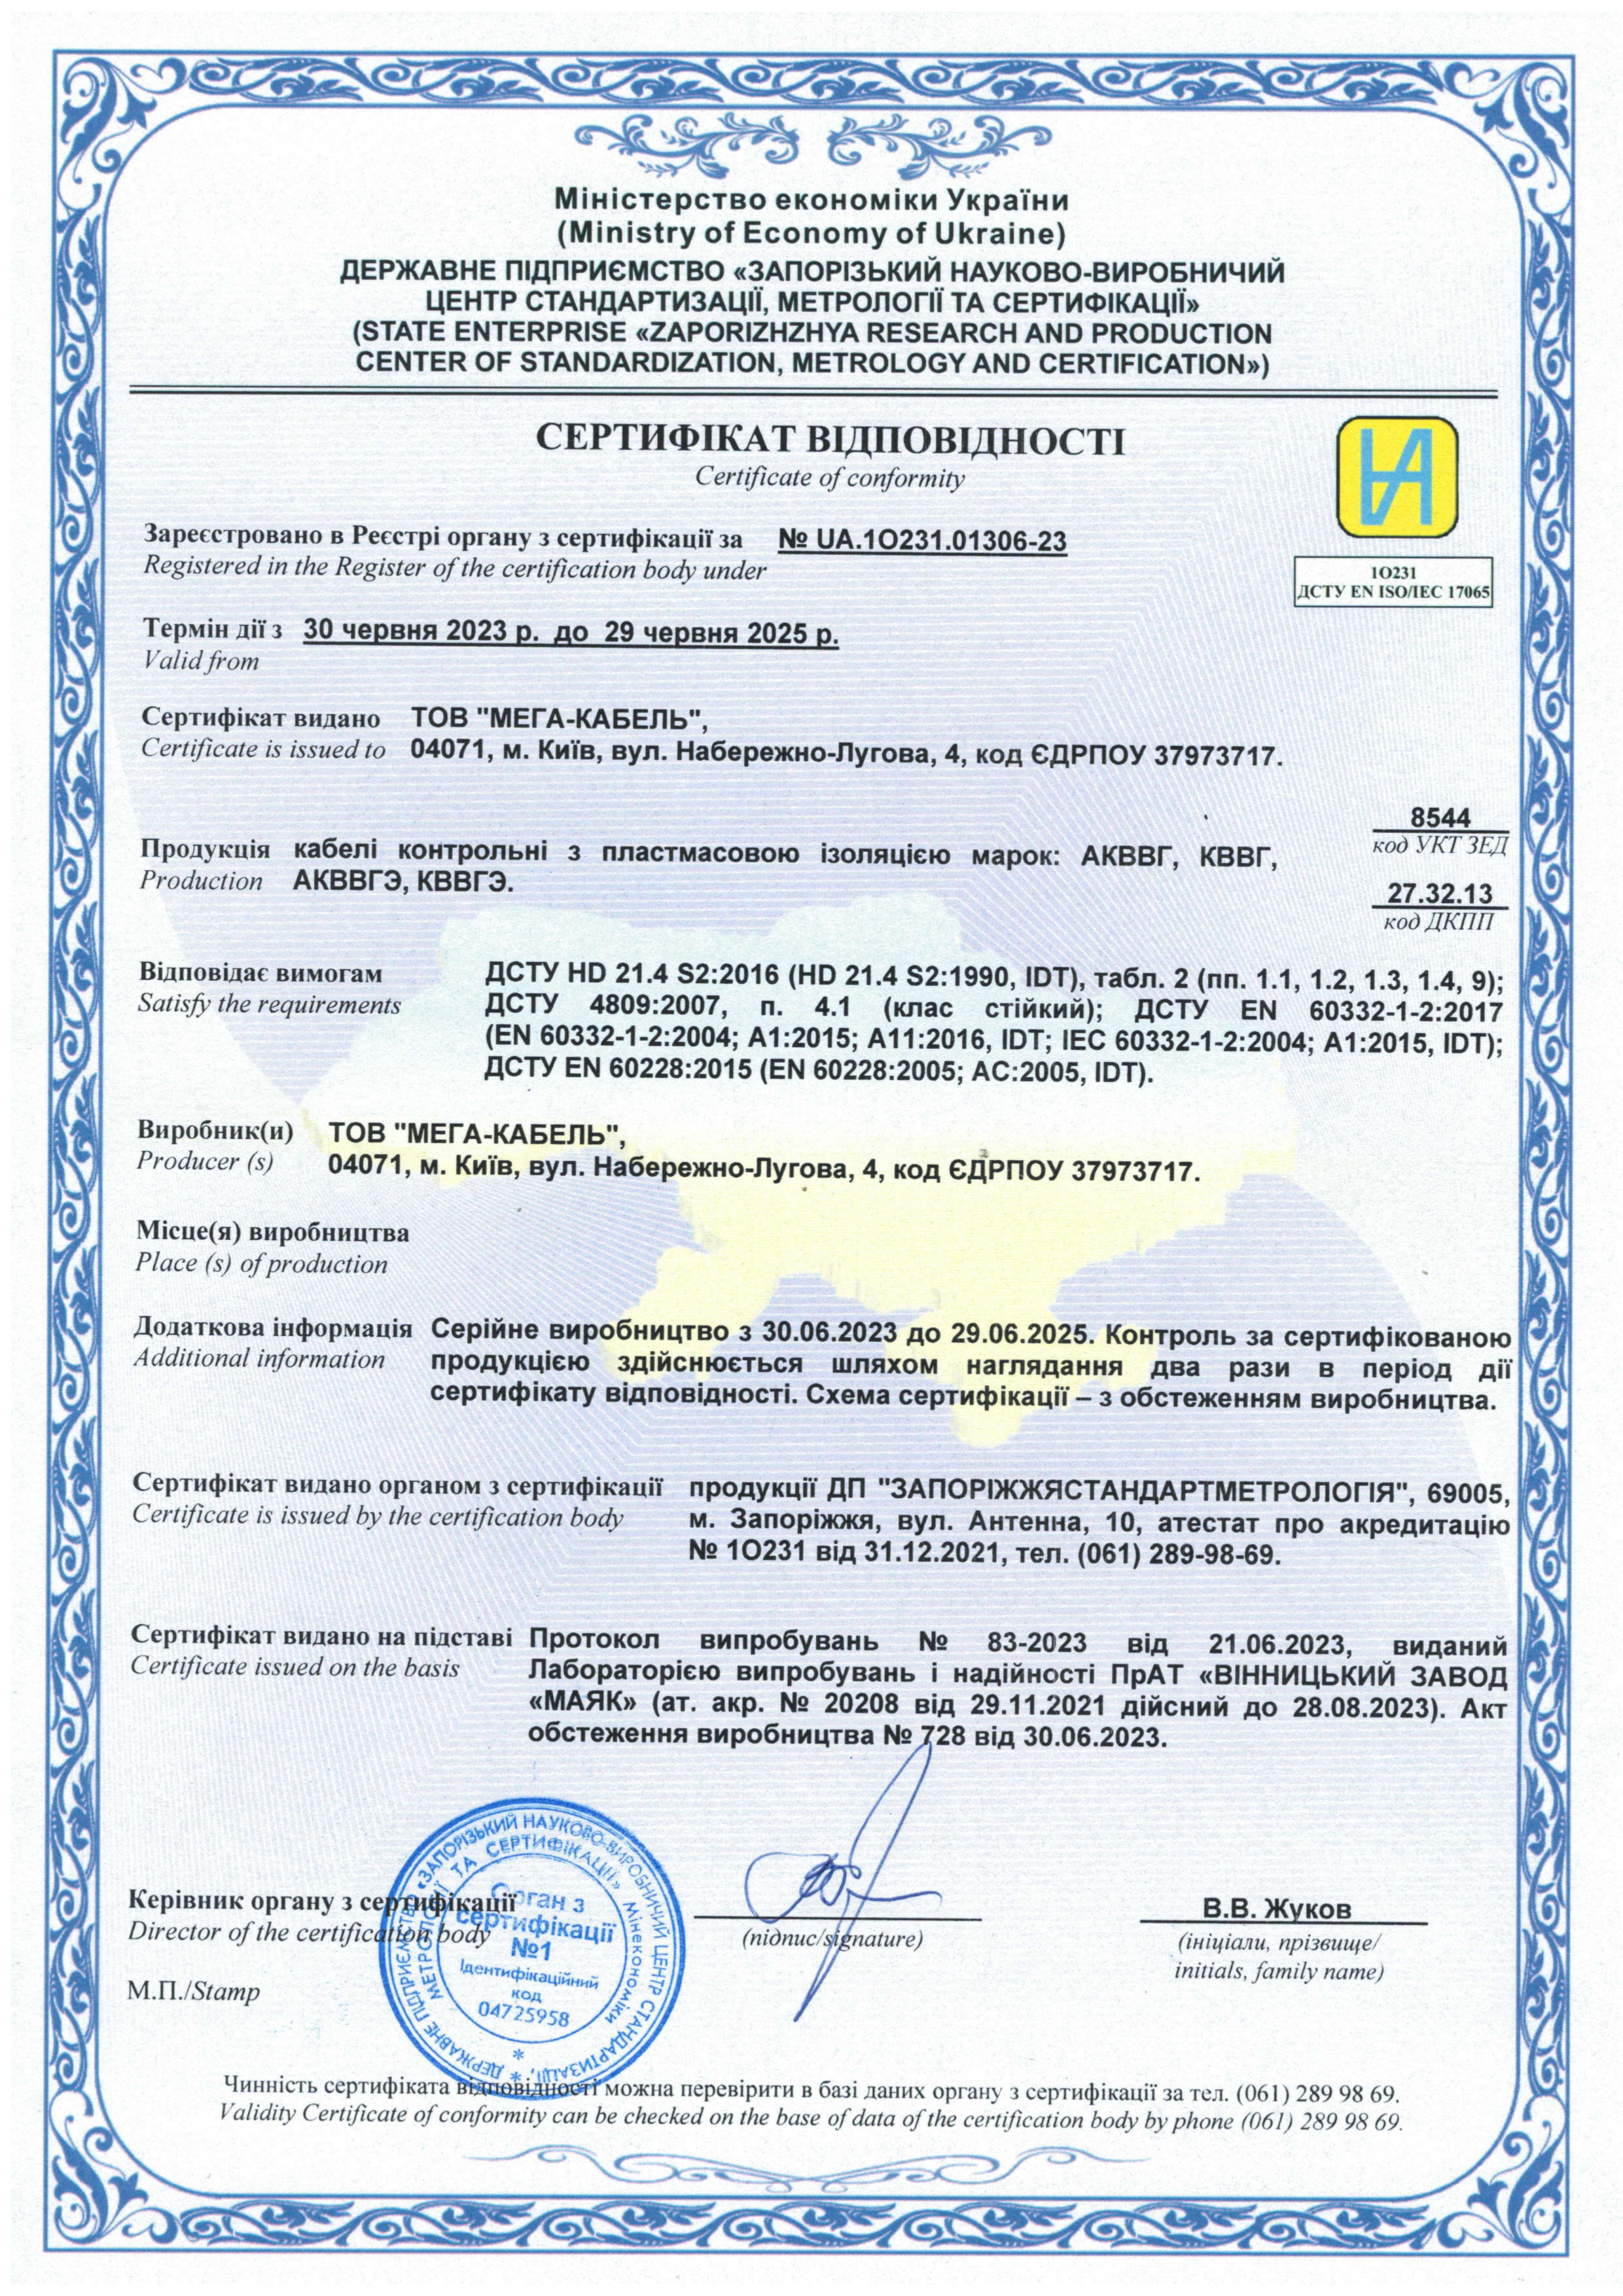 Сертификат на кабель АКВВГ и КВВГ 